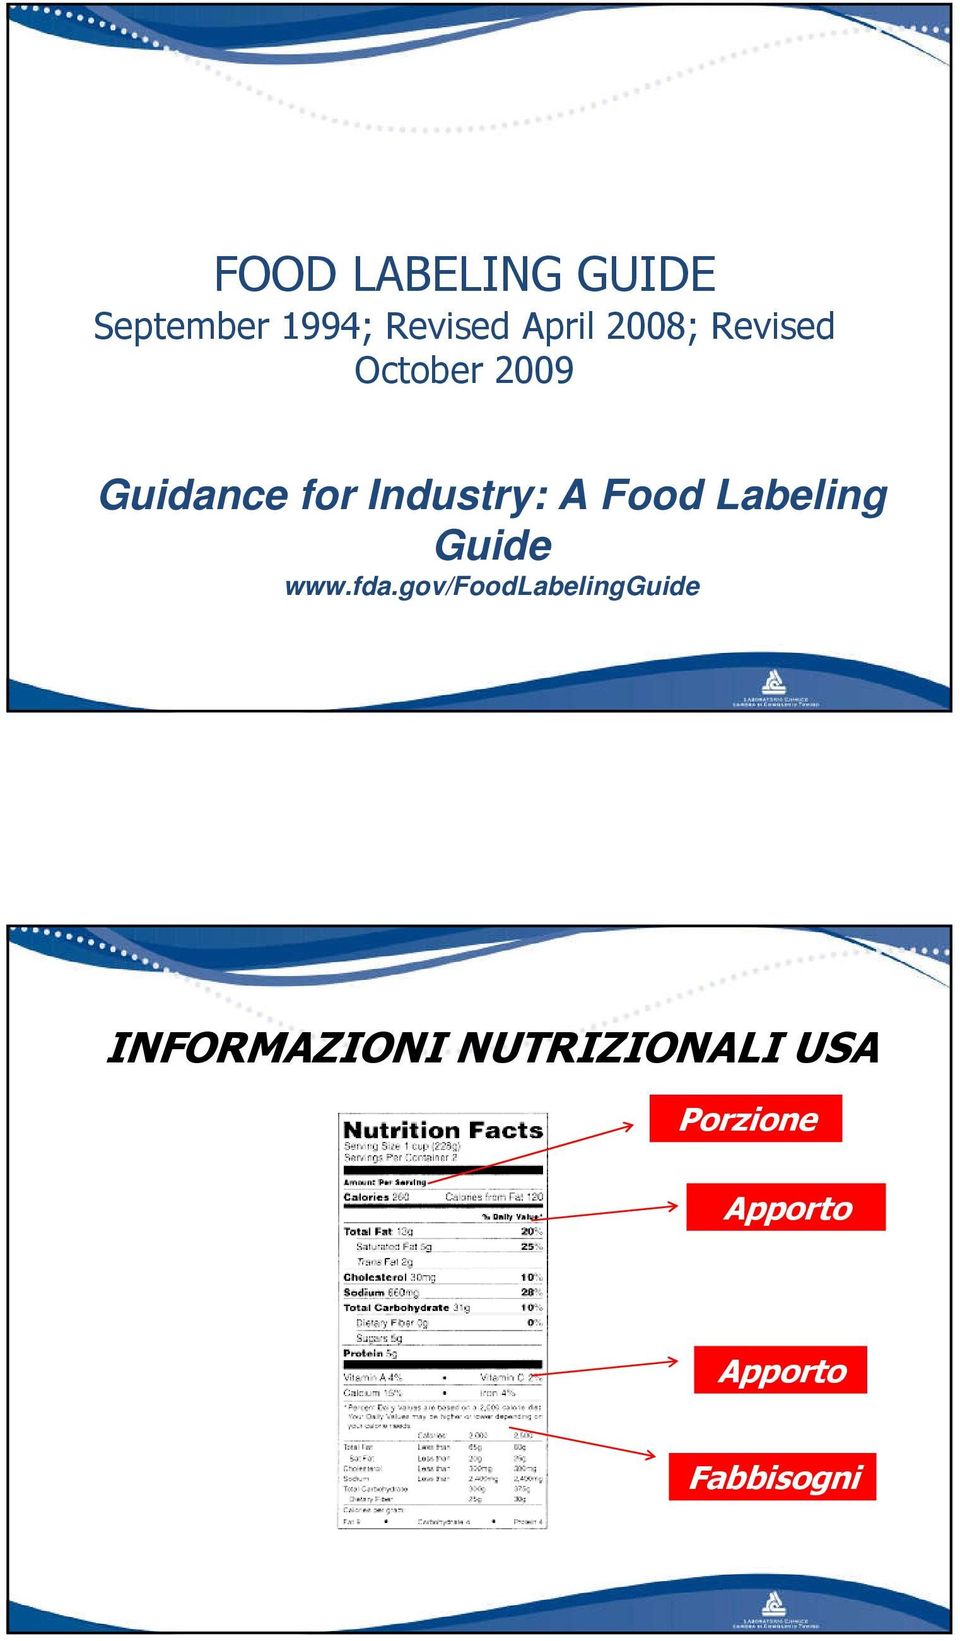 Food Labeling Guide www.fda.